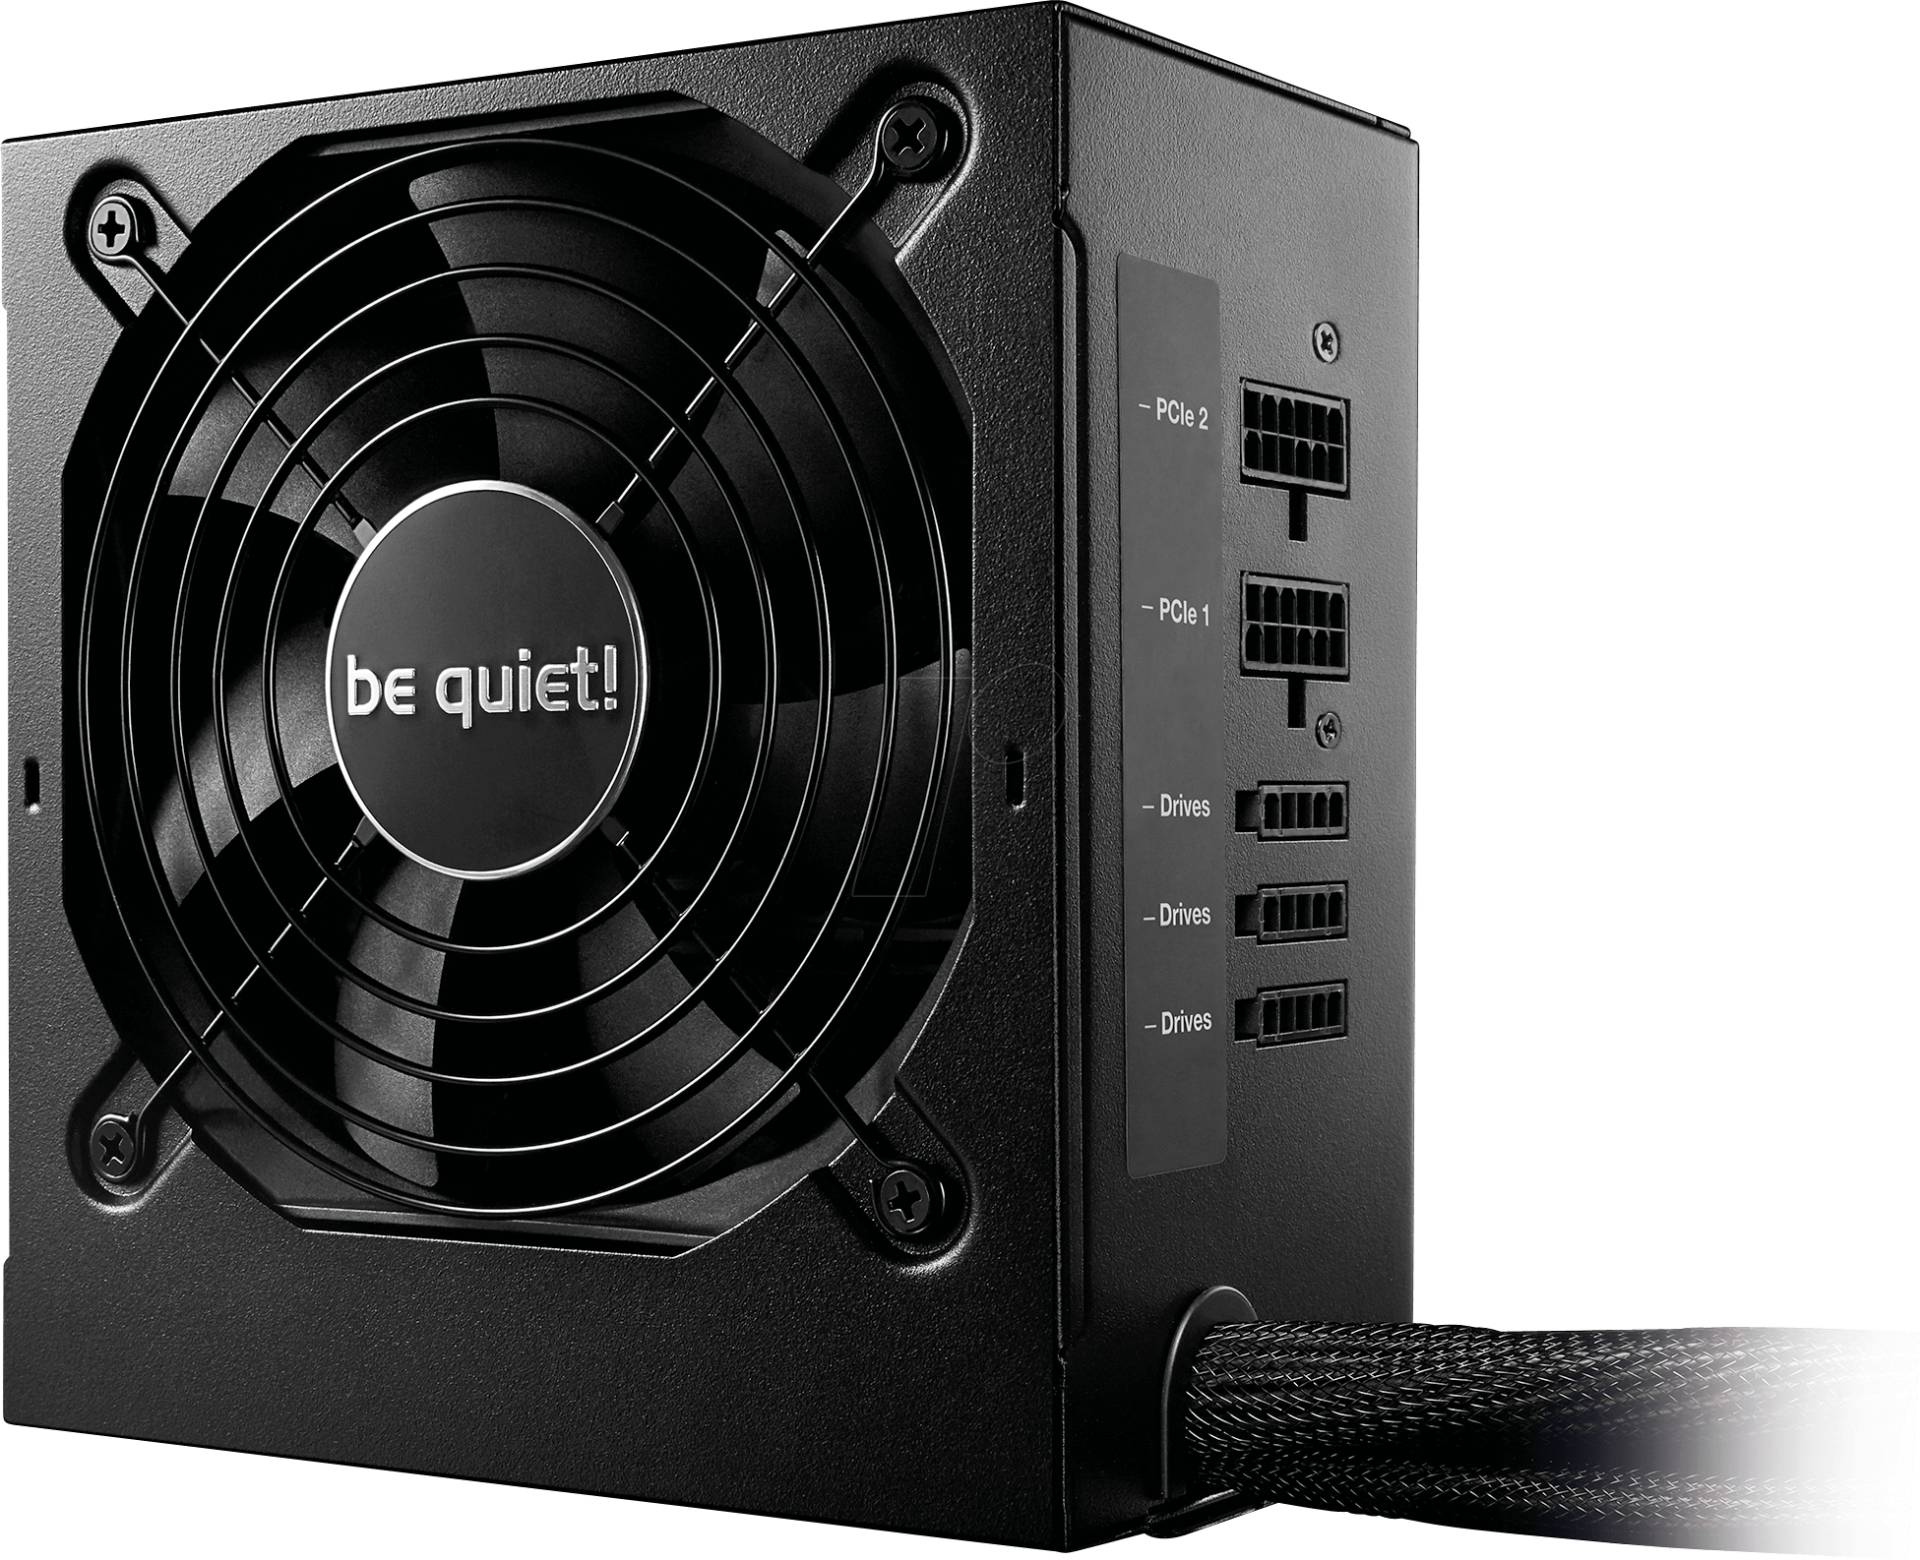 BQT BN303 - be quiet! System Power 9 700W CM von BEQUIET